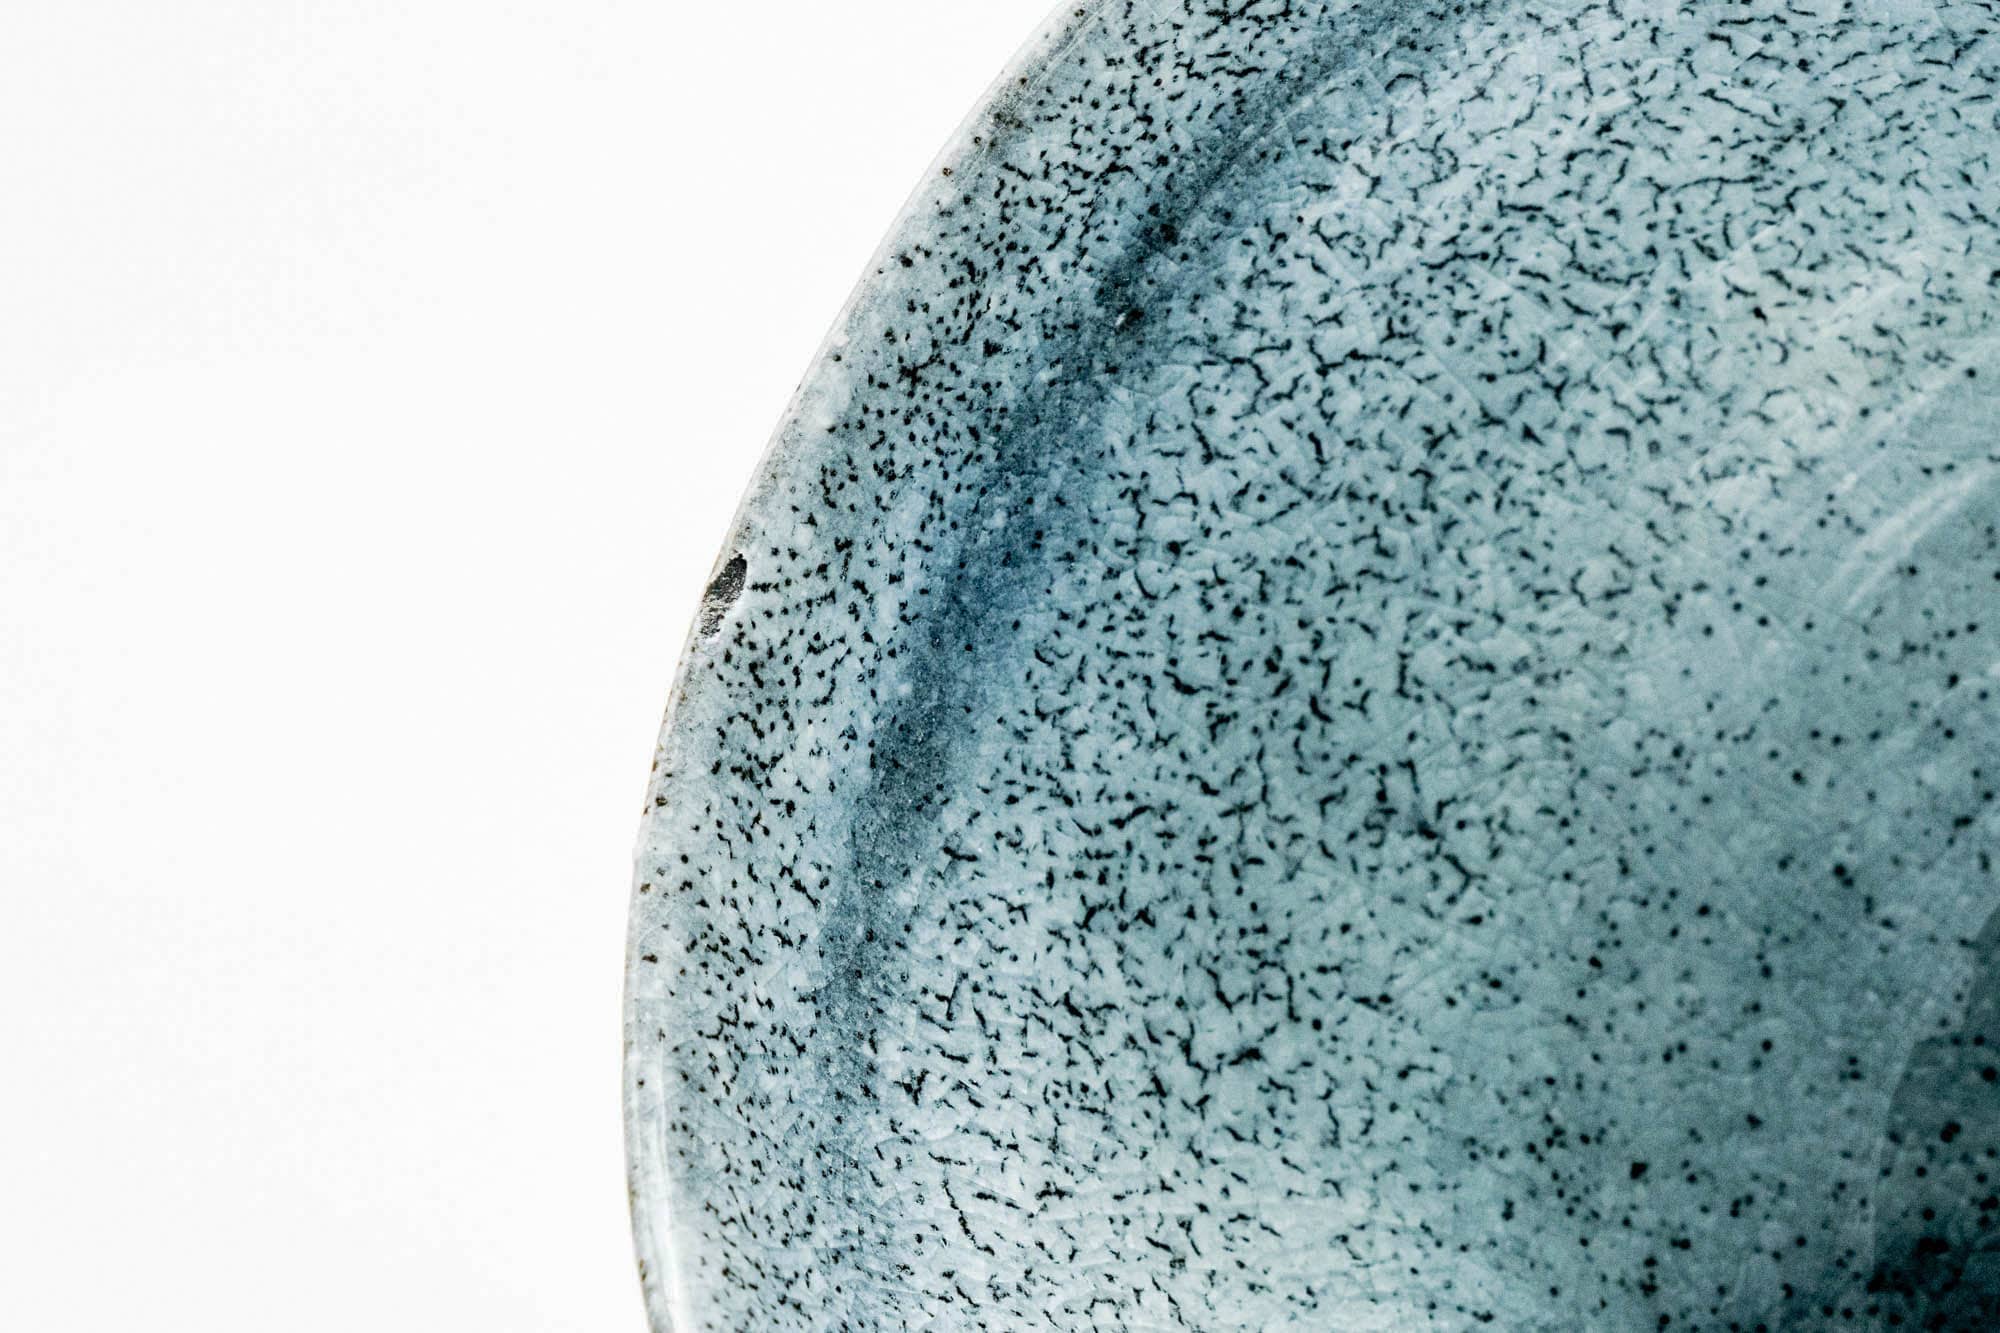 Japanese Matcha Bowl - Blue Celadon Drip-Glazed Hantsutsu-gata Chawan - 400ml